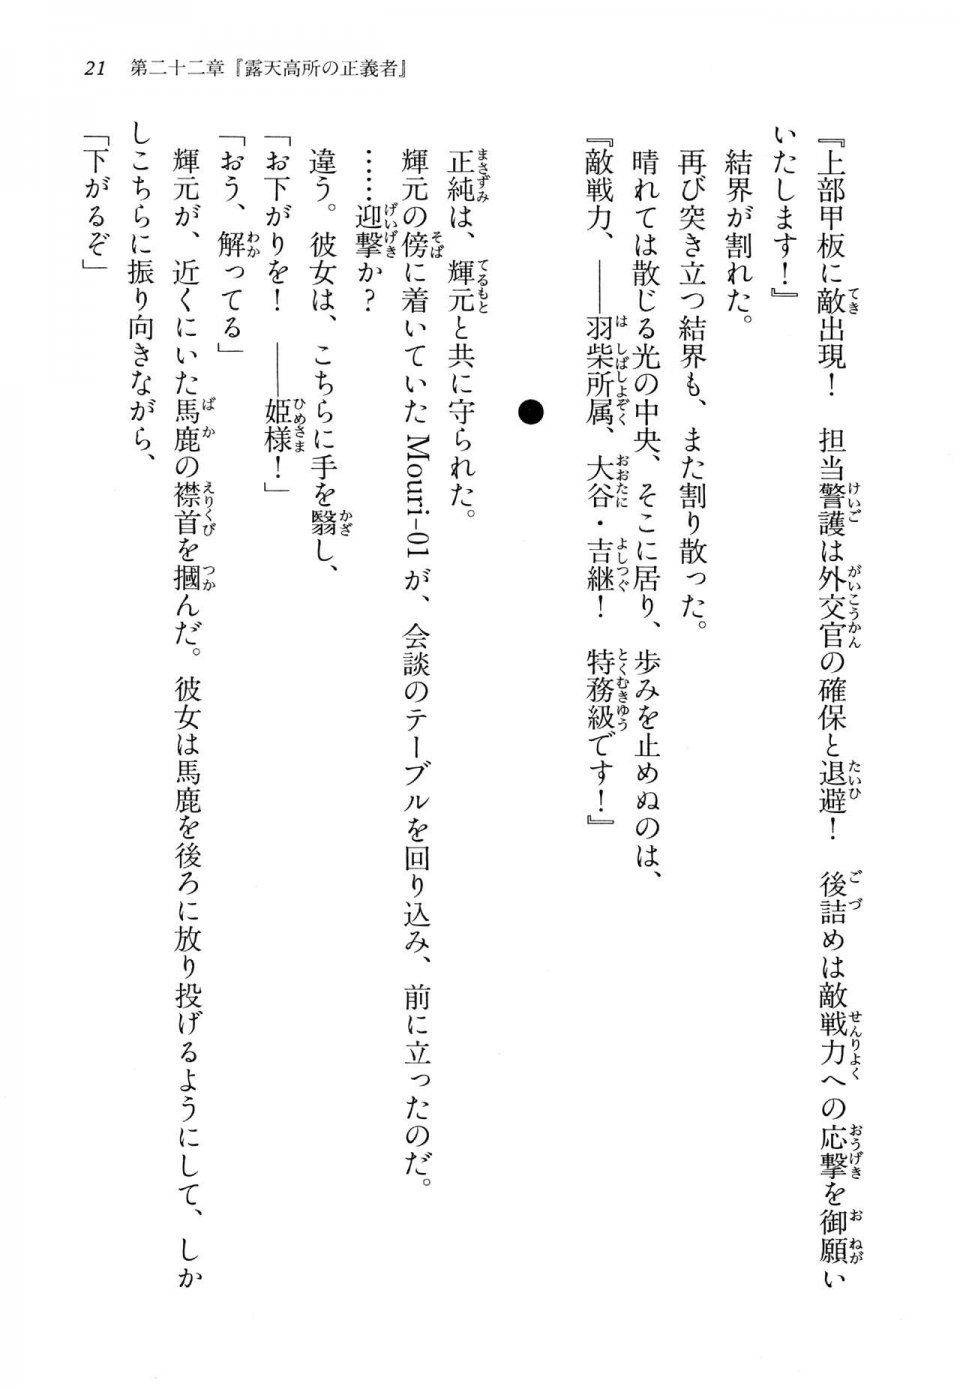 Kyoukai Senjou no Horizon LN Vol 14(6B) - Photo #21